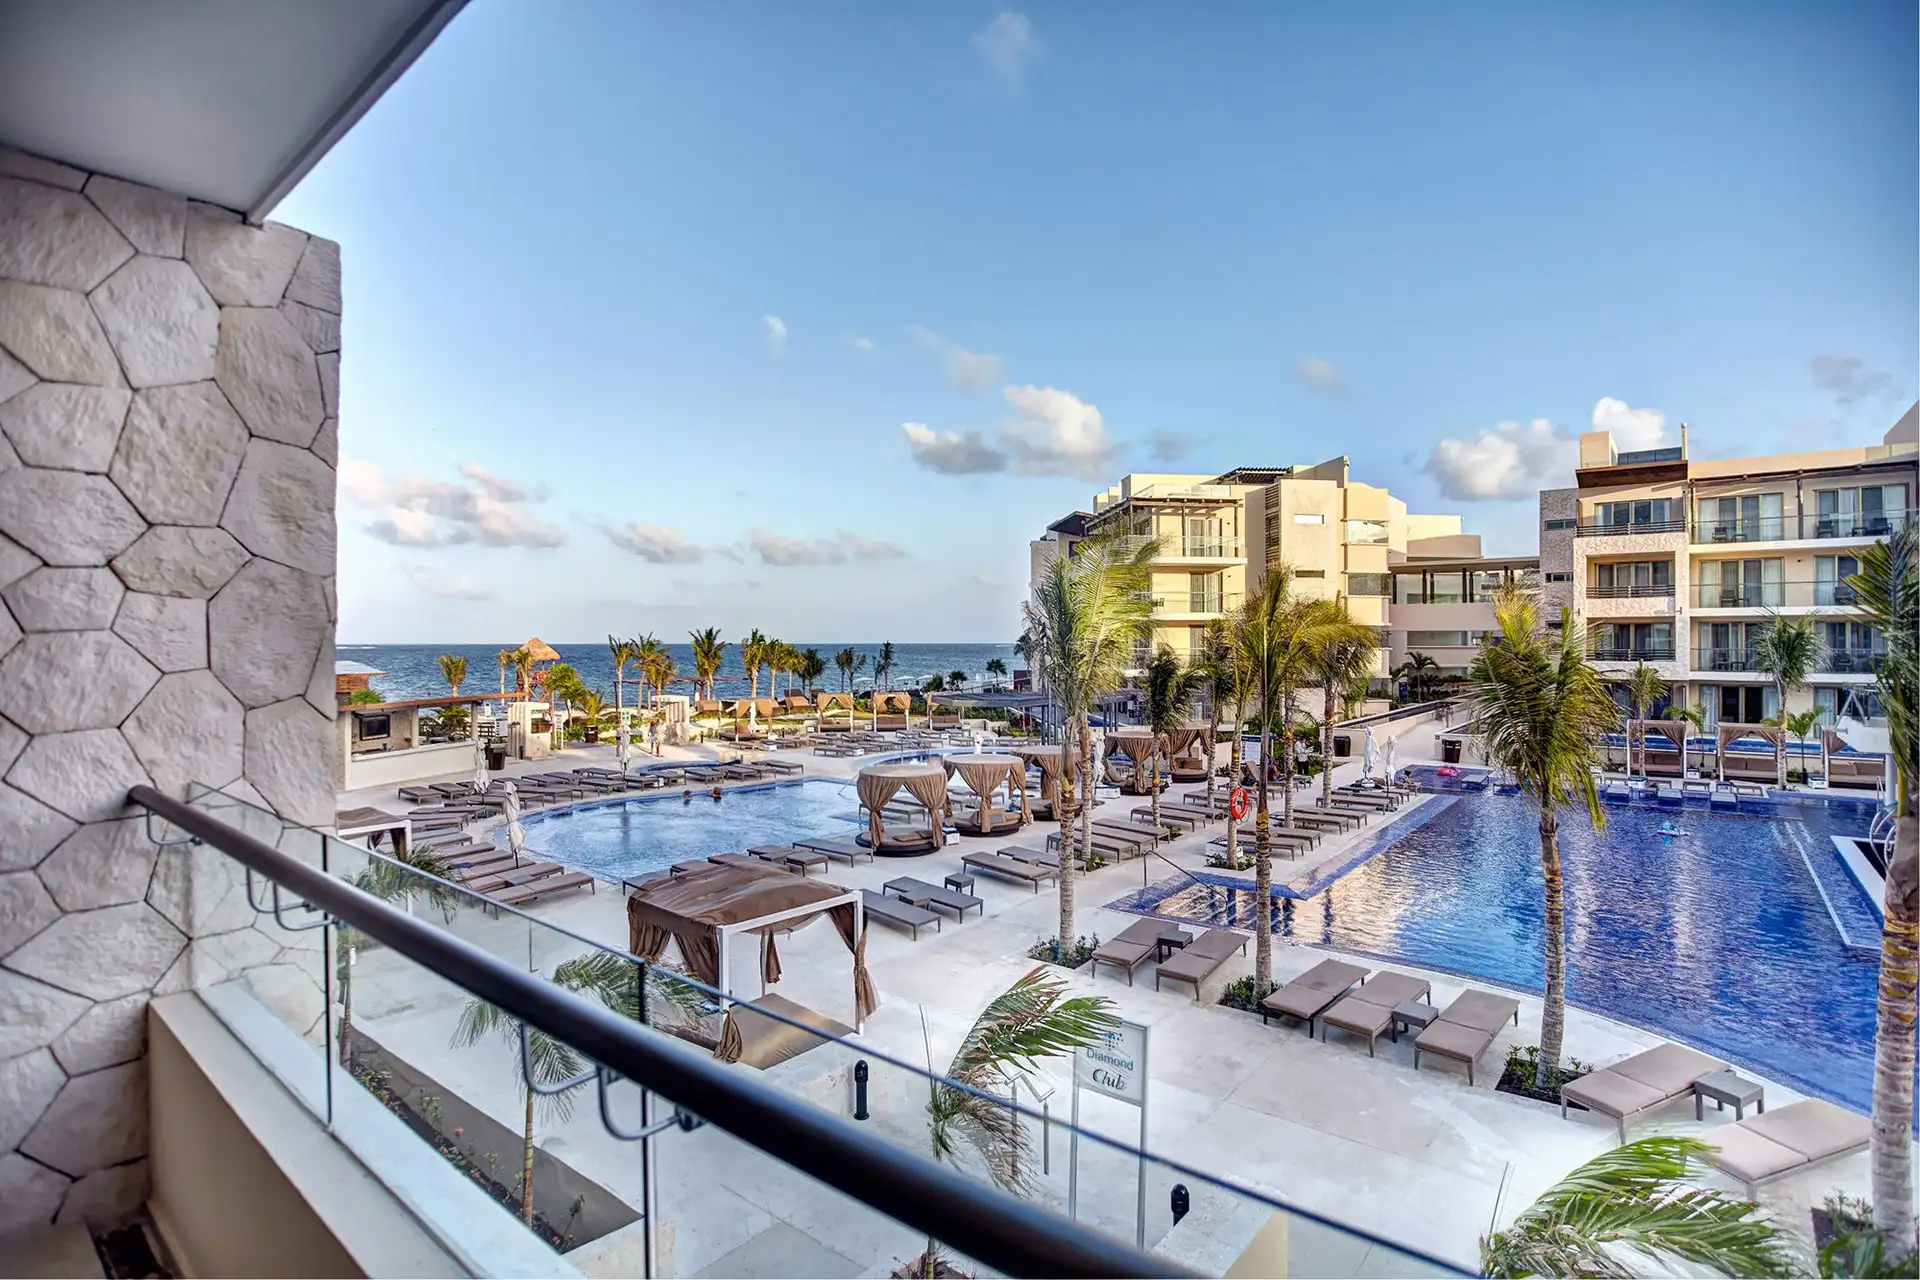 Royalton Riviera Cancun in Mexico